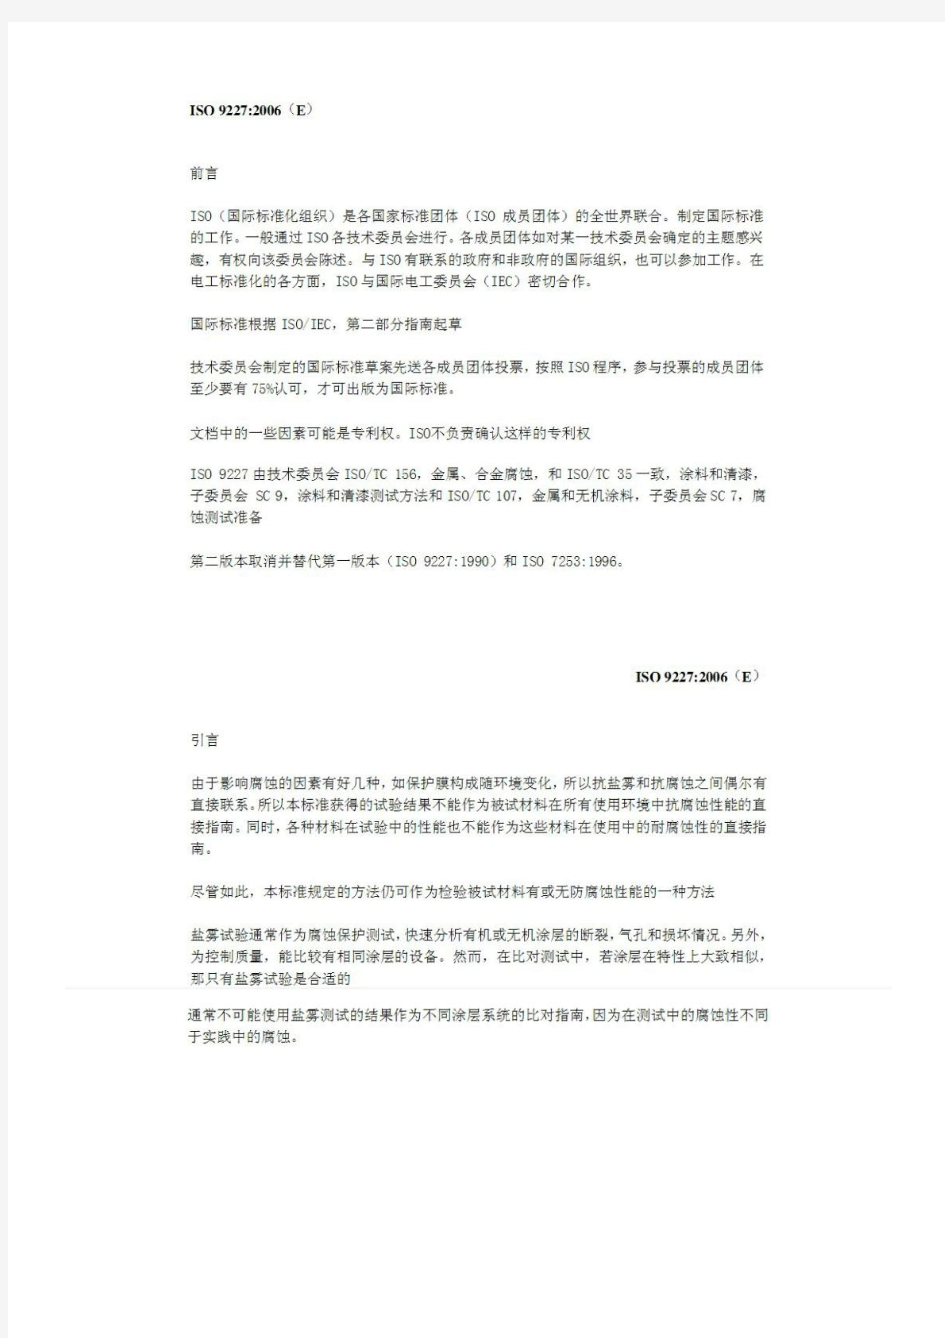 ISO9227-2006人造气氛腐蚀实验盐雾实验(中文版)